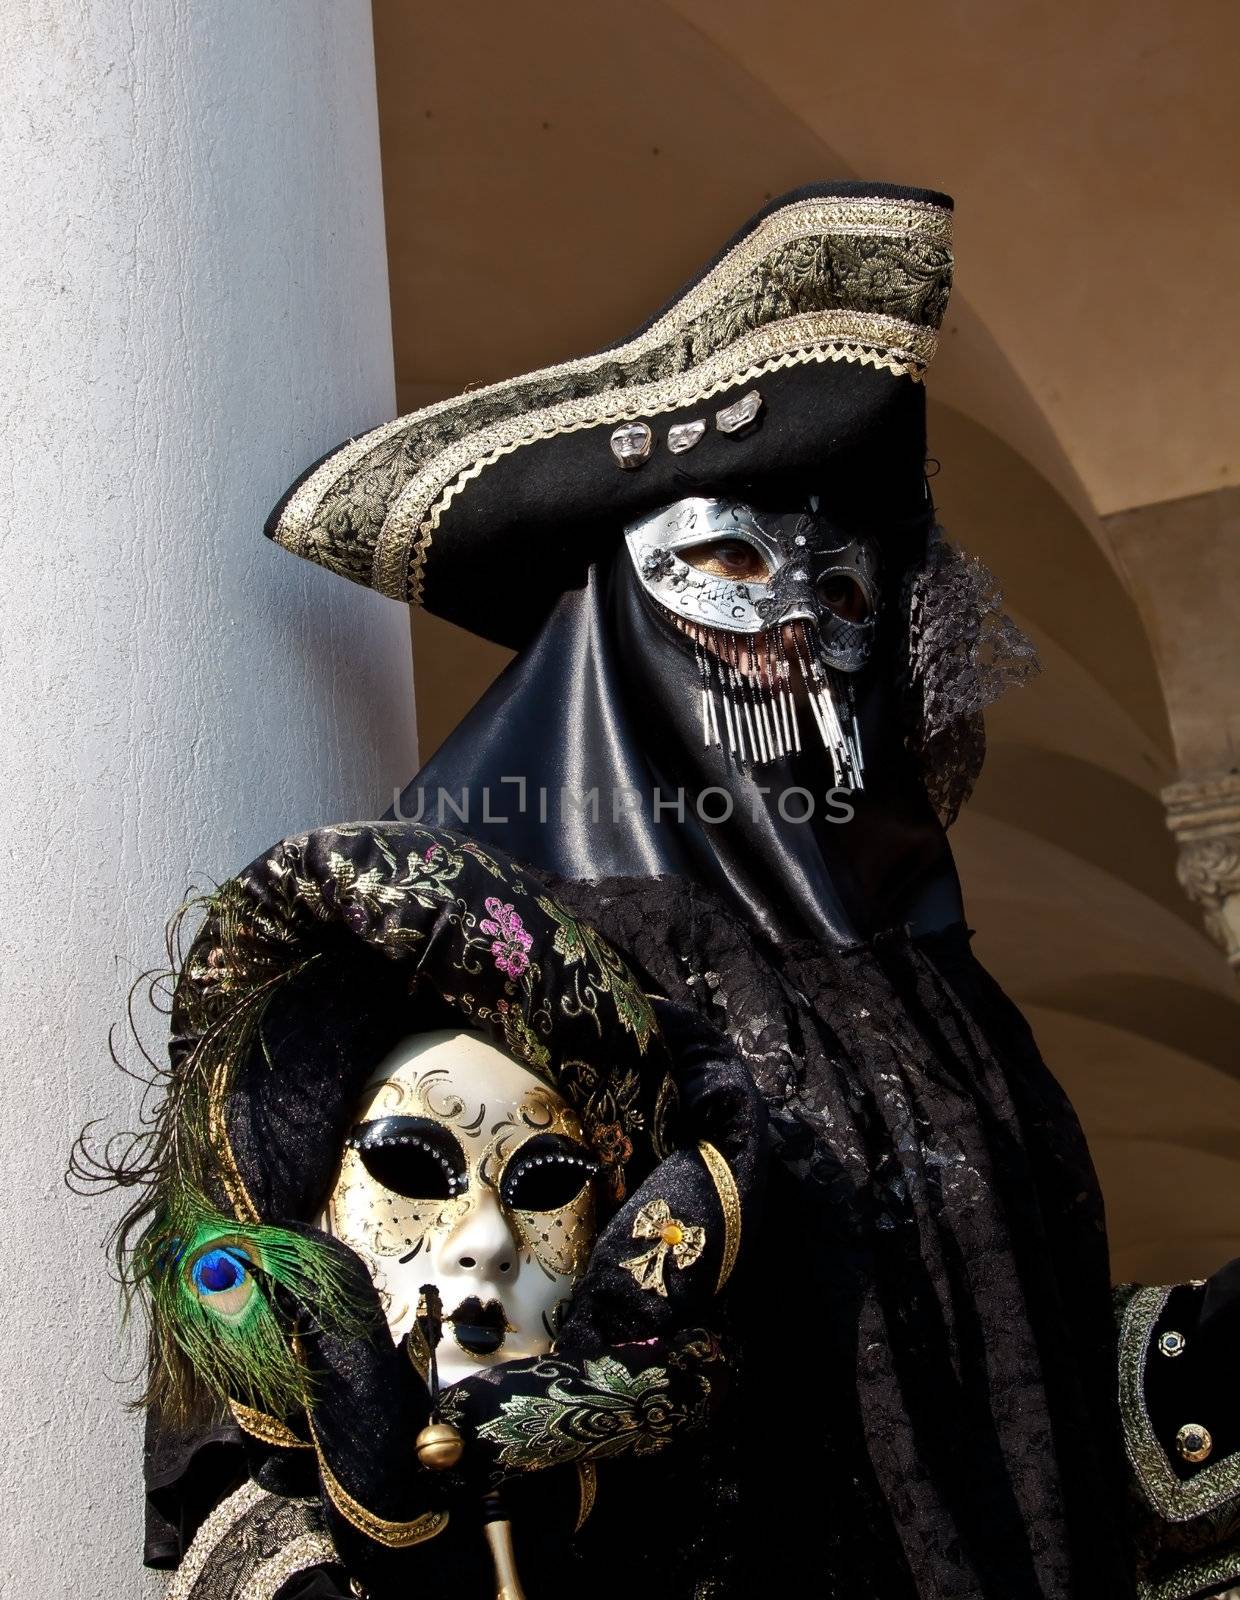 Venice masks - Carnival in Italy